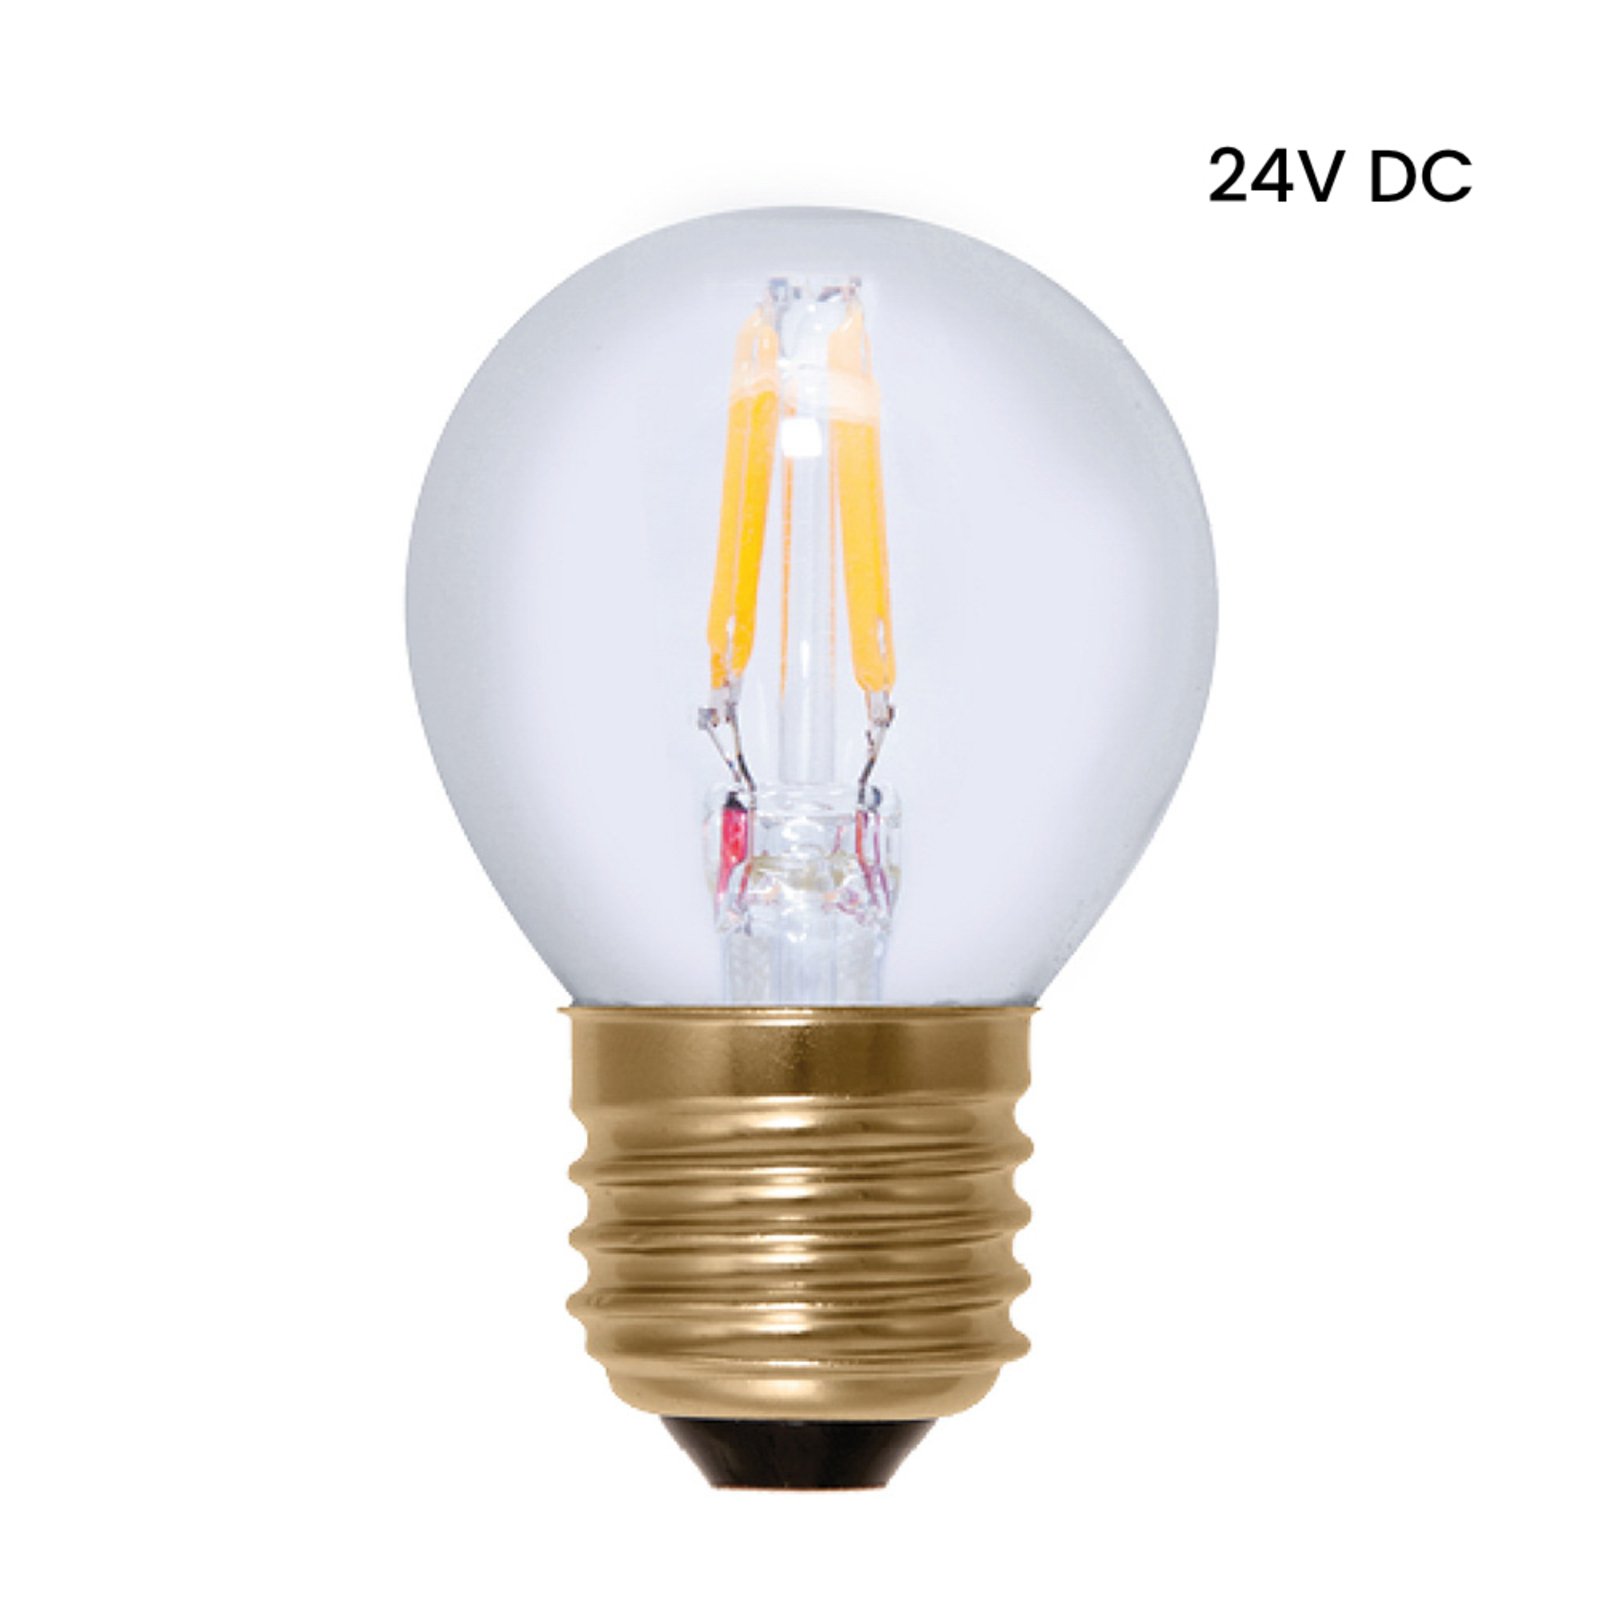 Ampoule LED balle de golf E27 3 W blanc chaud